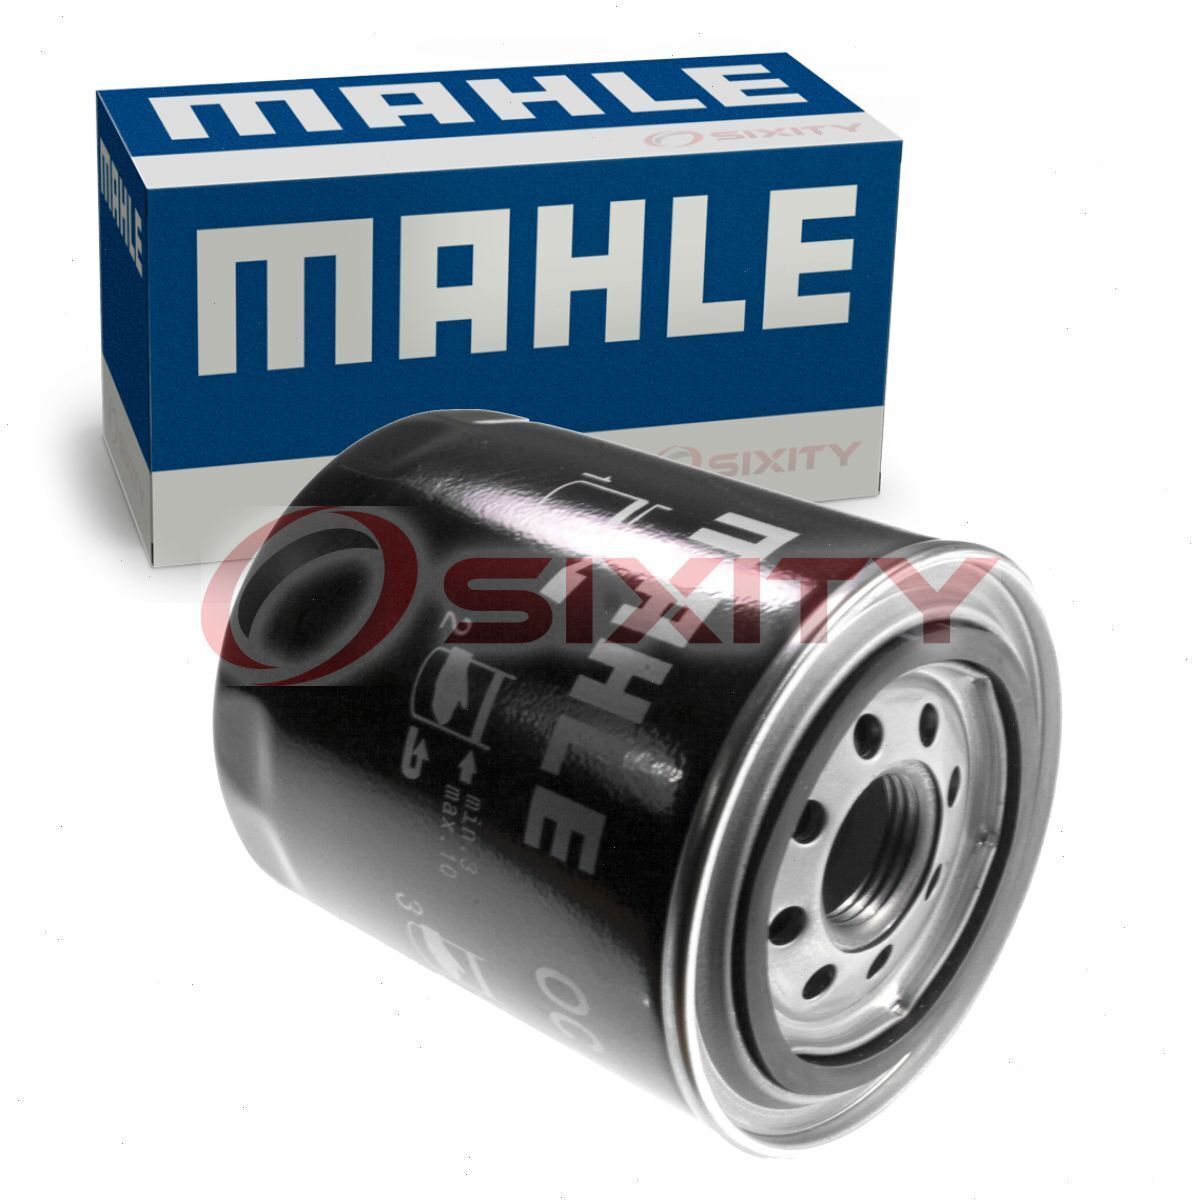 MAHLE Engine Oil Filter for 2000-2008 Bentley Arnage 6.8L V8 Oil Change xz